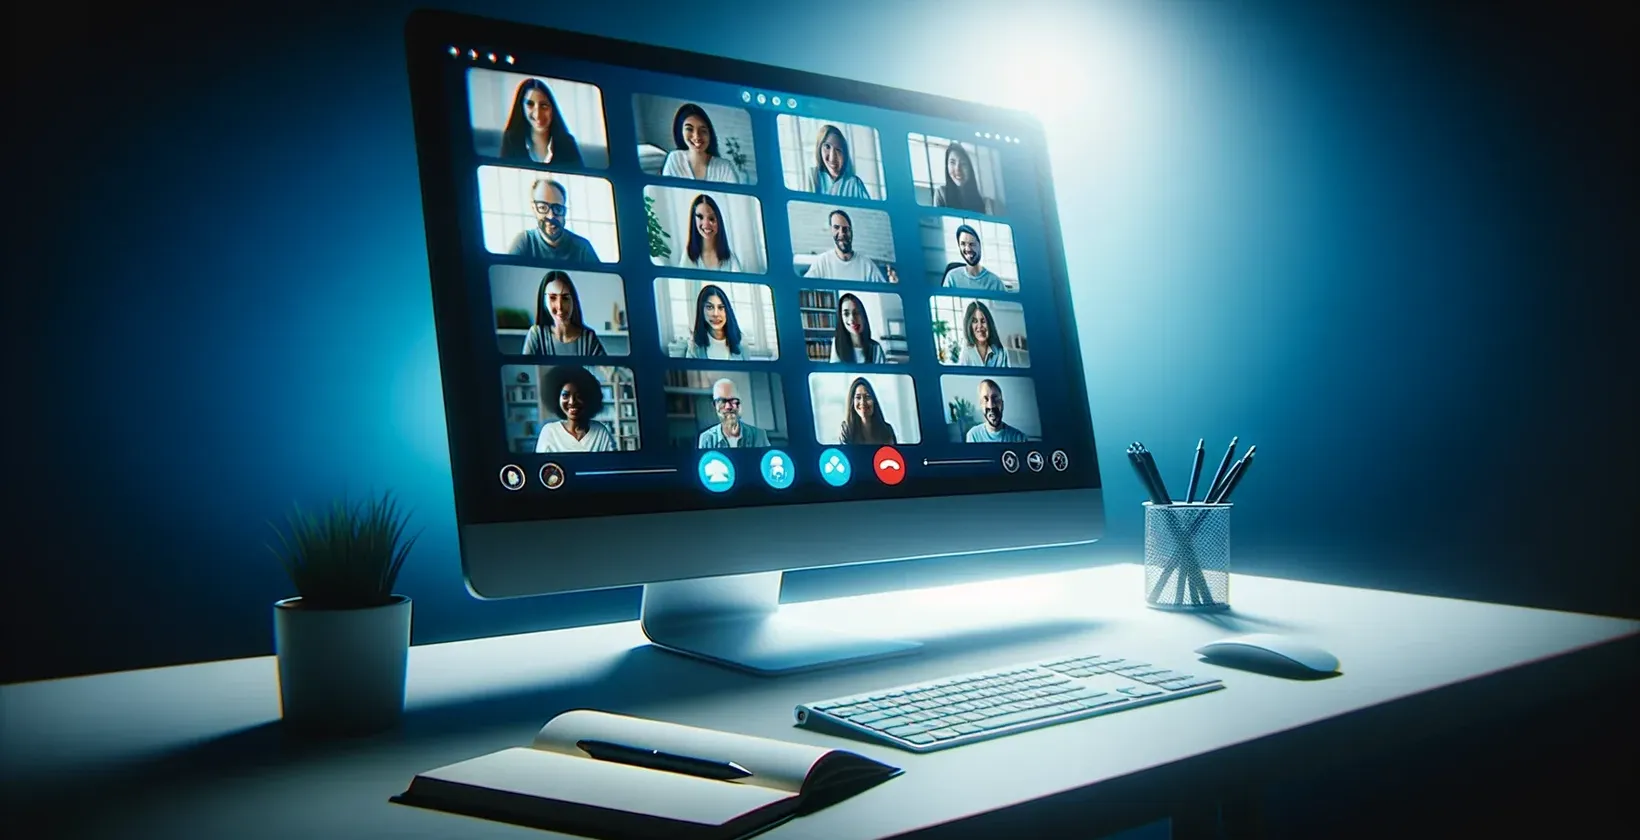 Obrázok obrazovky počítača zobrazujúci reláciu GoToMeeting, na ktorej je viditeľná skupina ľudí a živý prepis.